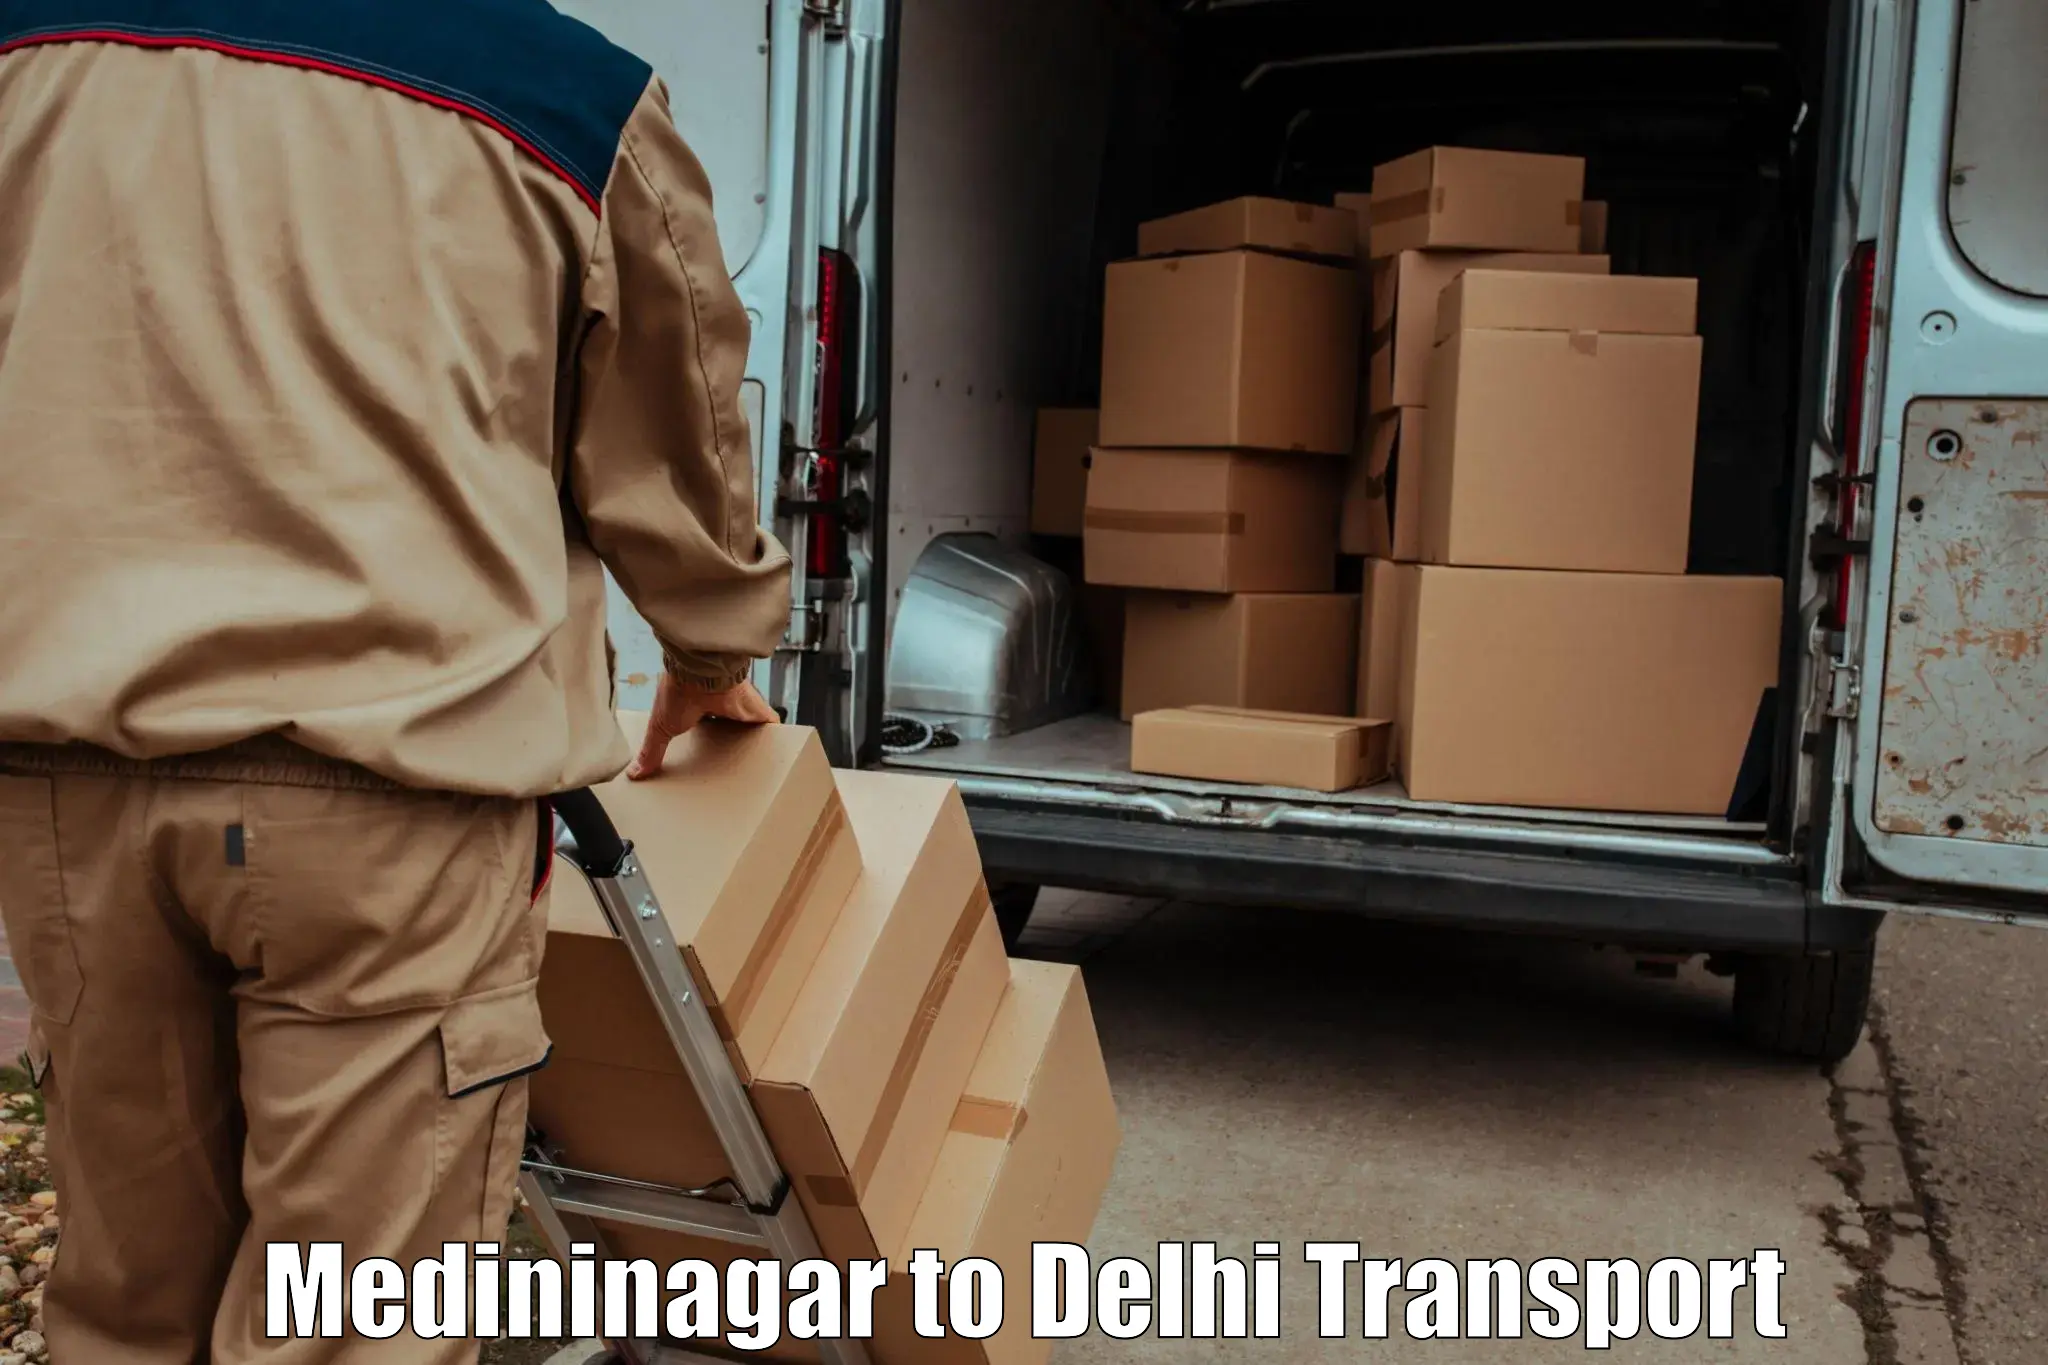 Transport services in Medininagar to IIT Delhi